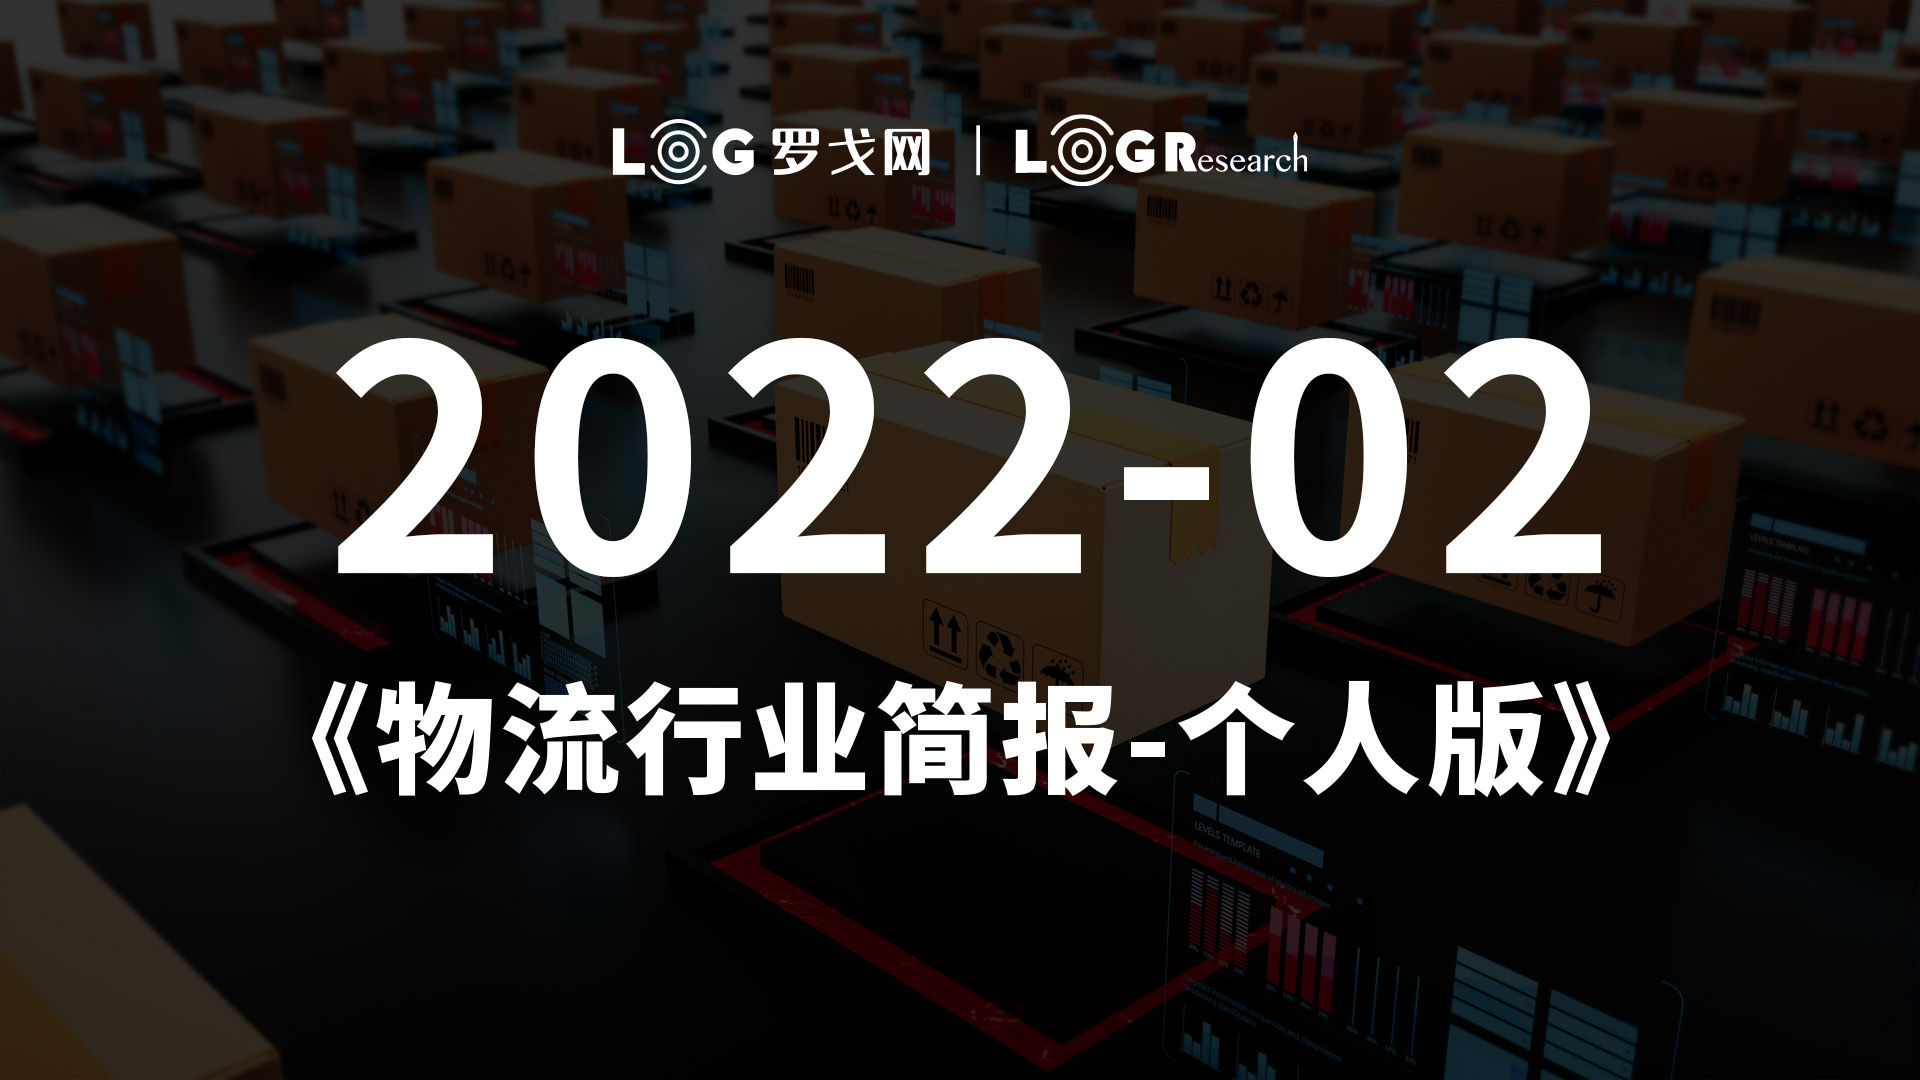 2022-02物流行业简报-个人版